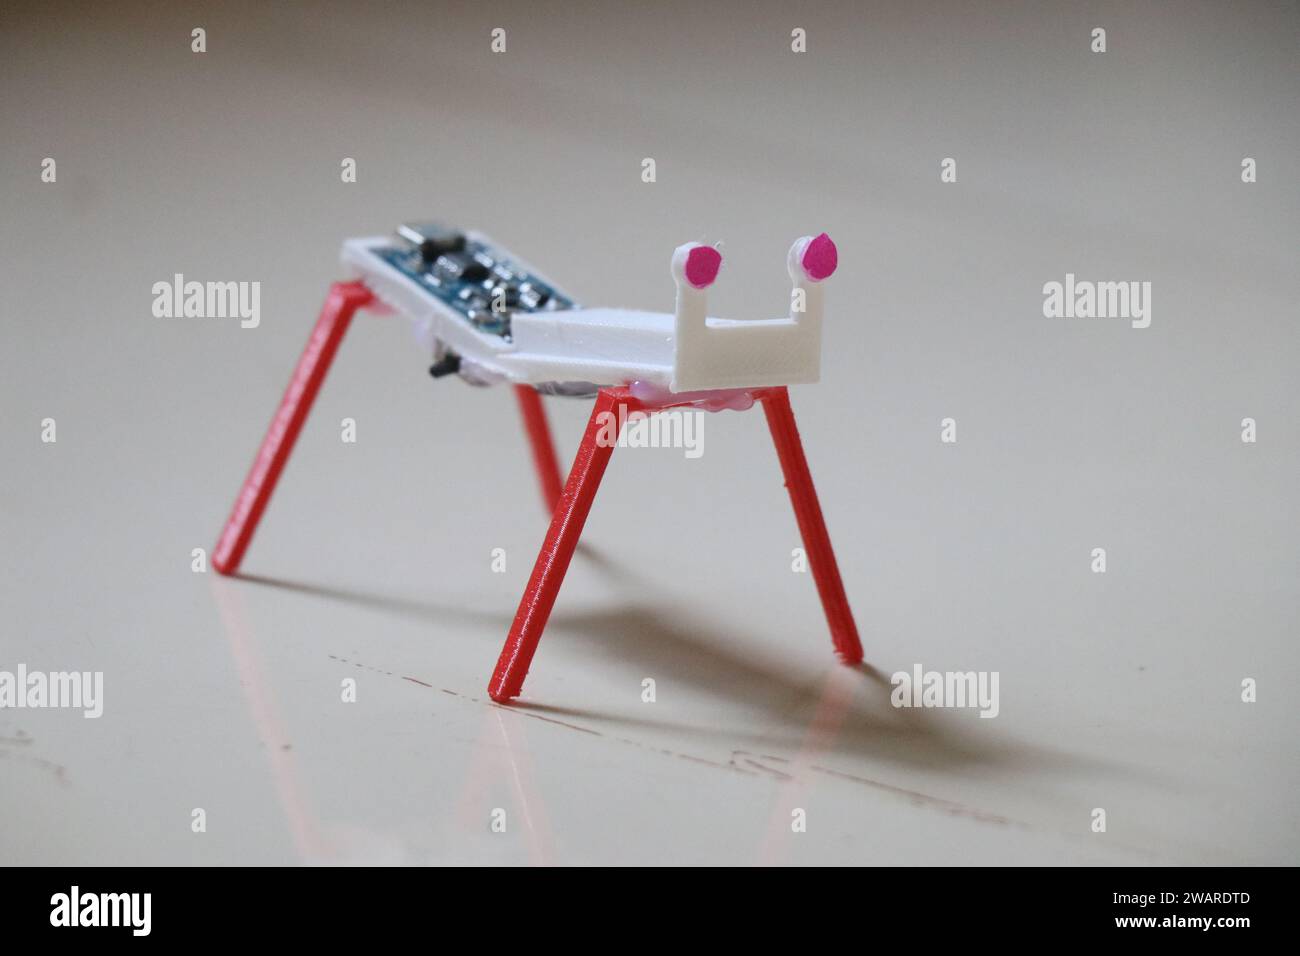 Robot de petite taille avec quatre jambes fabriqué à l'aide de la technologie d'impression 3D et fonctionne à l'aide de vibrations causées par un petit moteur placé à l'intérieur Banque D'Images